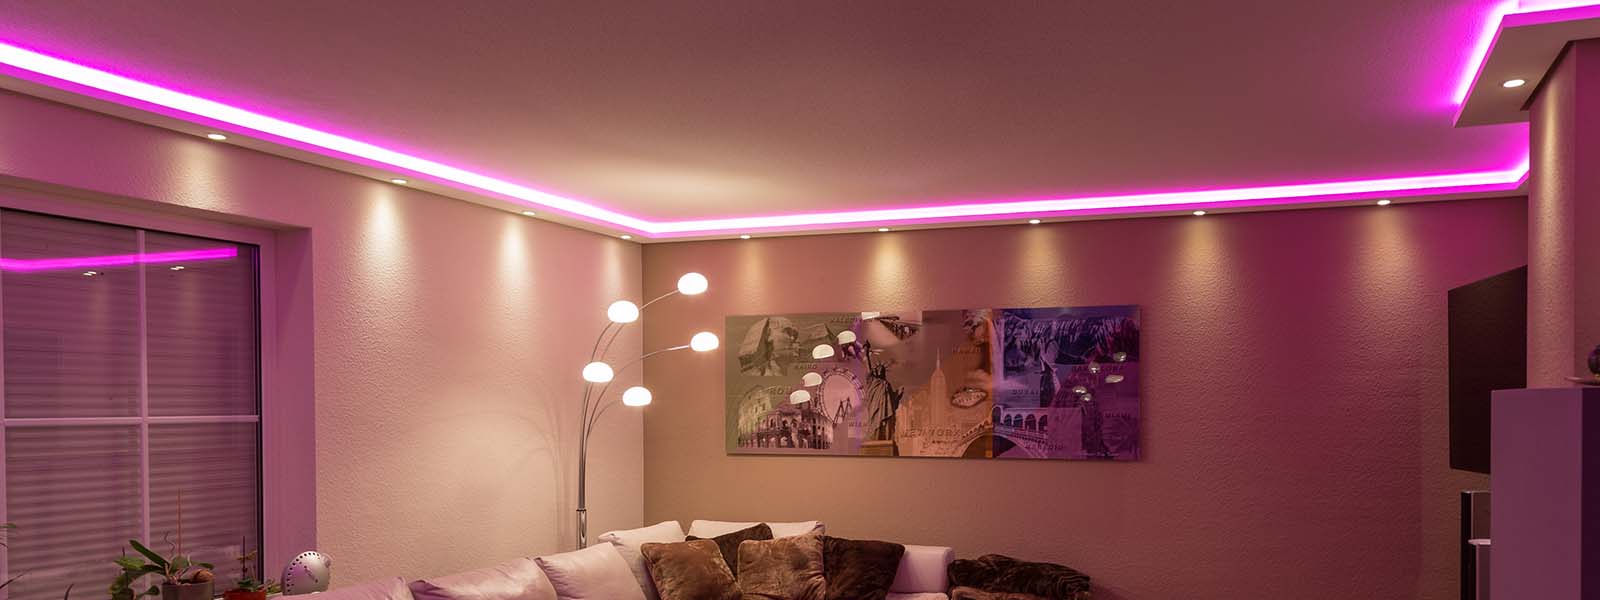 LED Stuckleisten für indirekte und direkte Wand- und Deckenbeleuchtung online kaufen